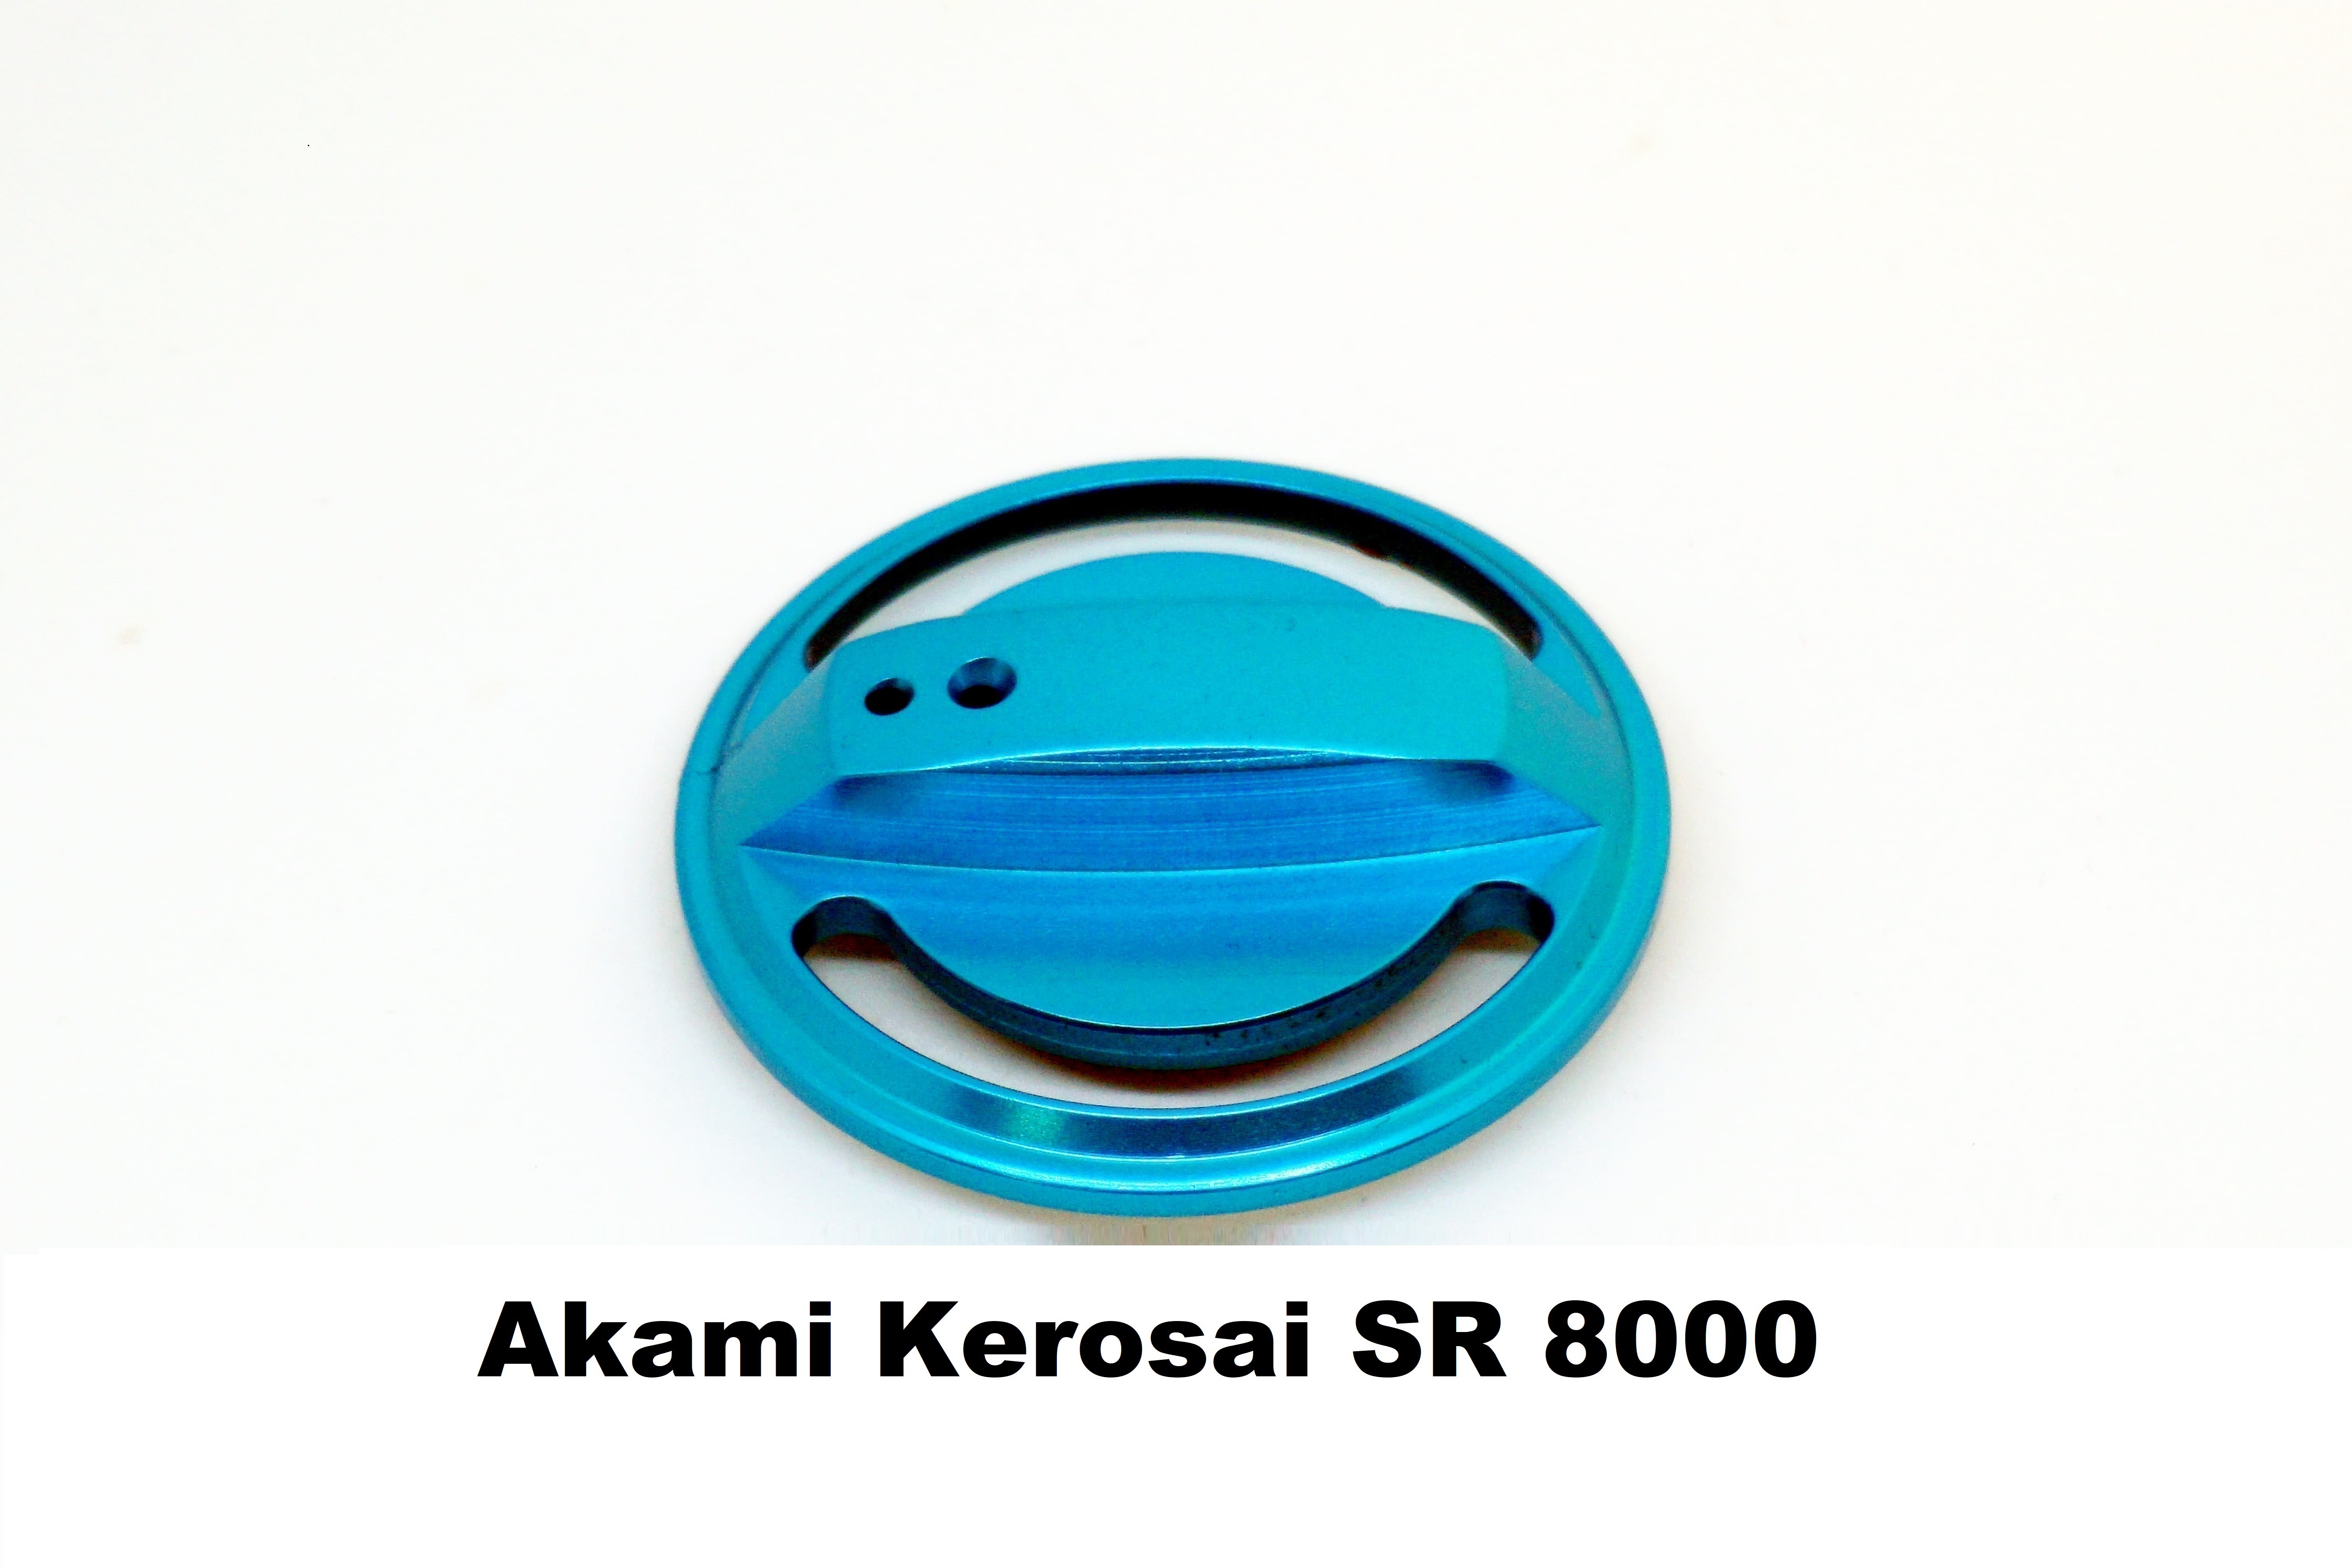 Drag Knob for Akami Kerosai SR 8000